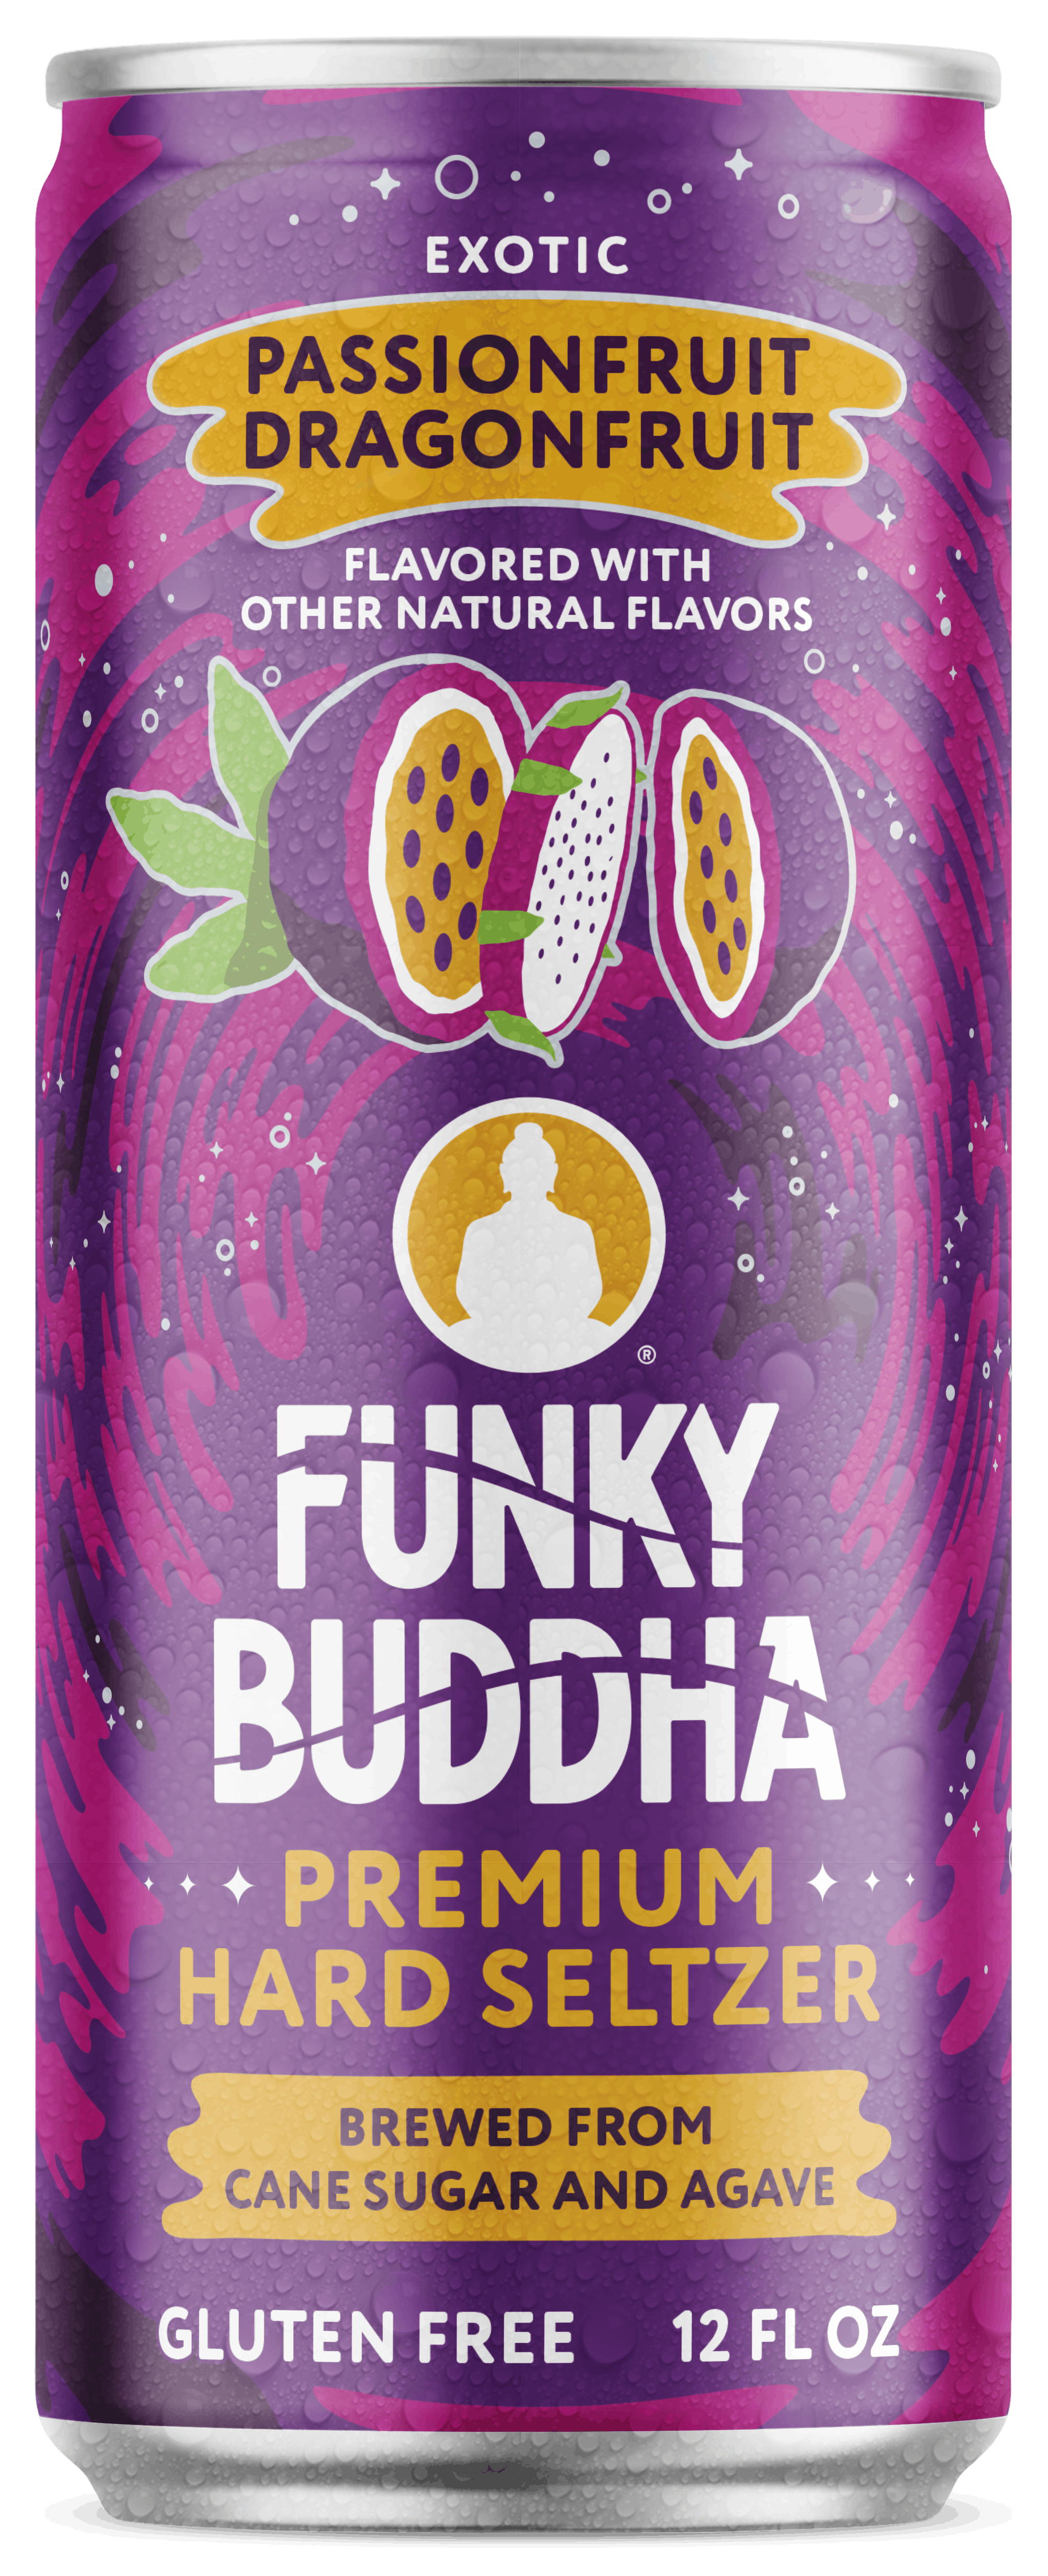 Funky Buddha Seltzer - Passionfruit Dragonfruit